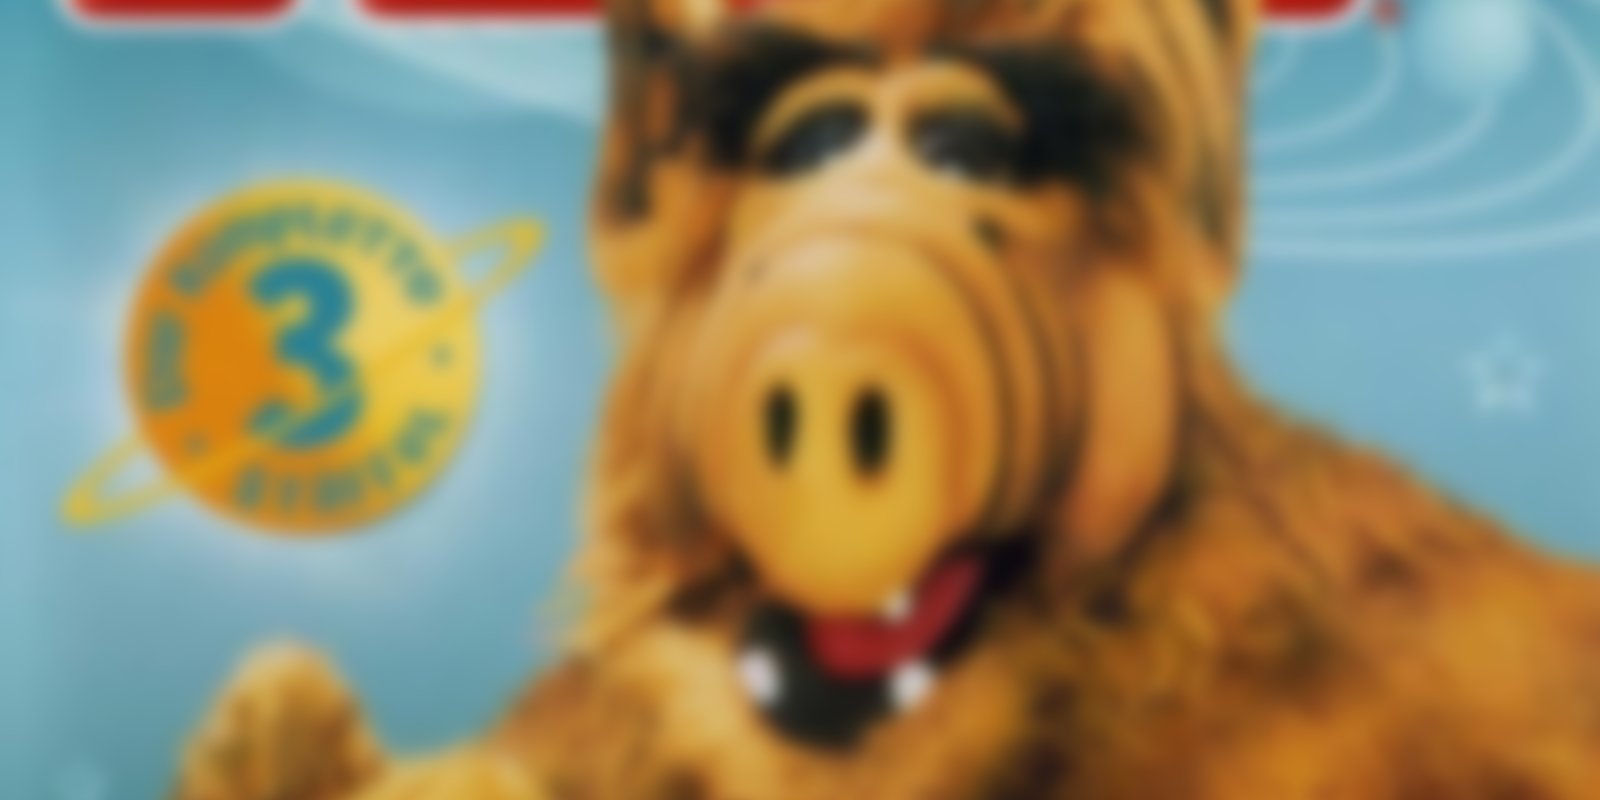 Alf - Staffel 3